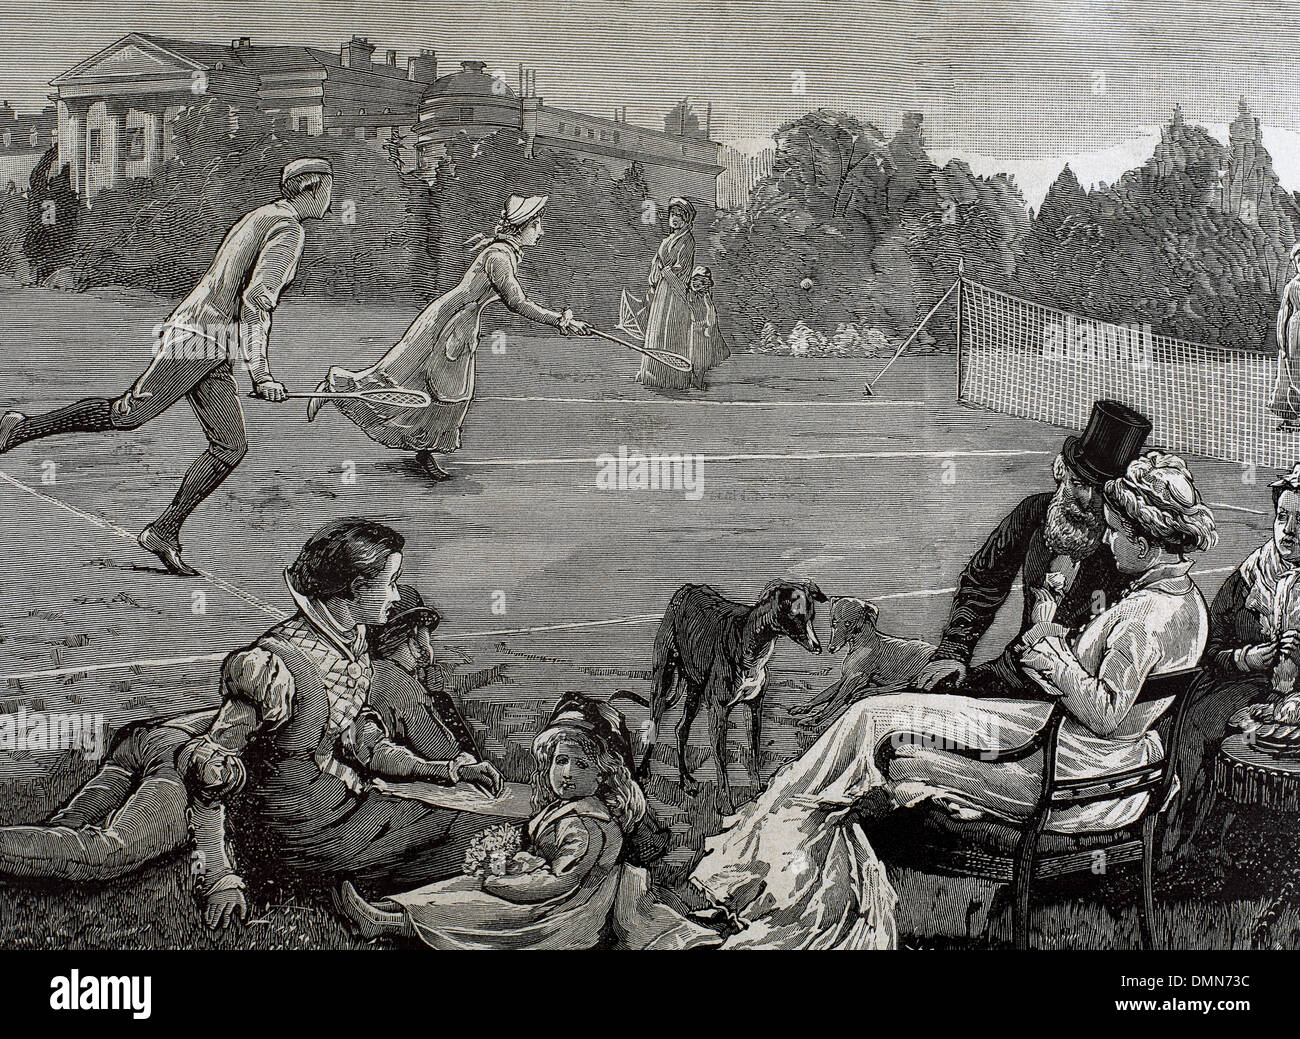 England. Birmingham. 19th century. Lawn tennis. Engraving by Rico, 'La Ilustracion Espanola y Americana', 1880. Stock Photo